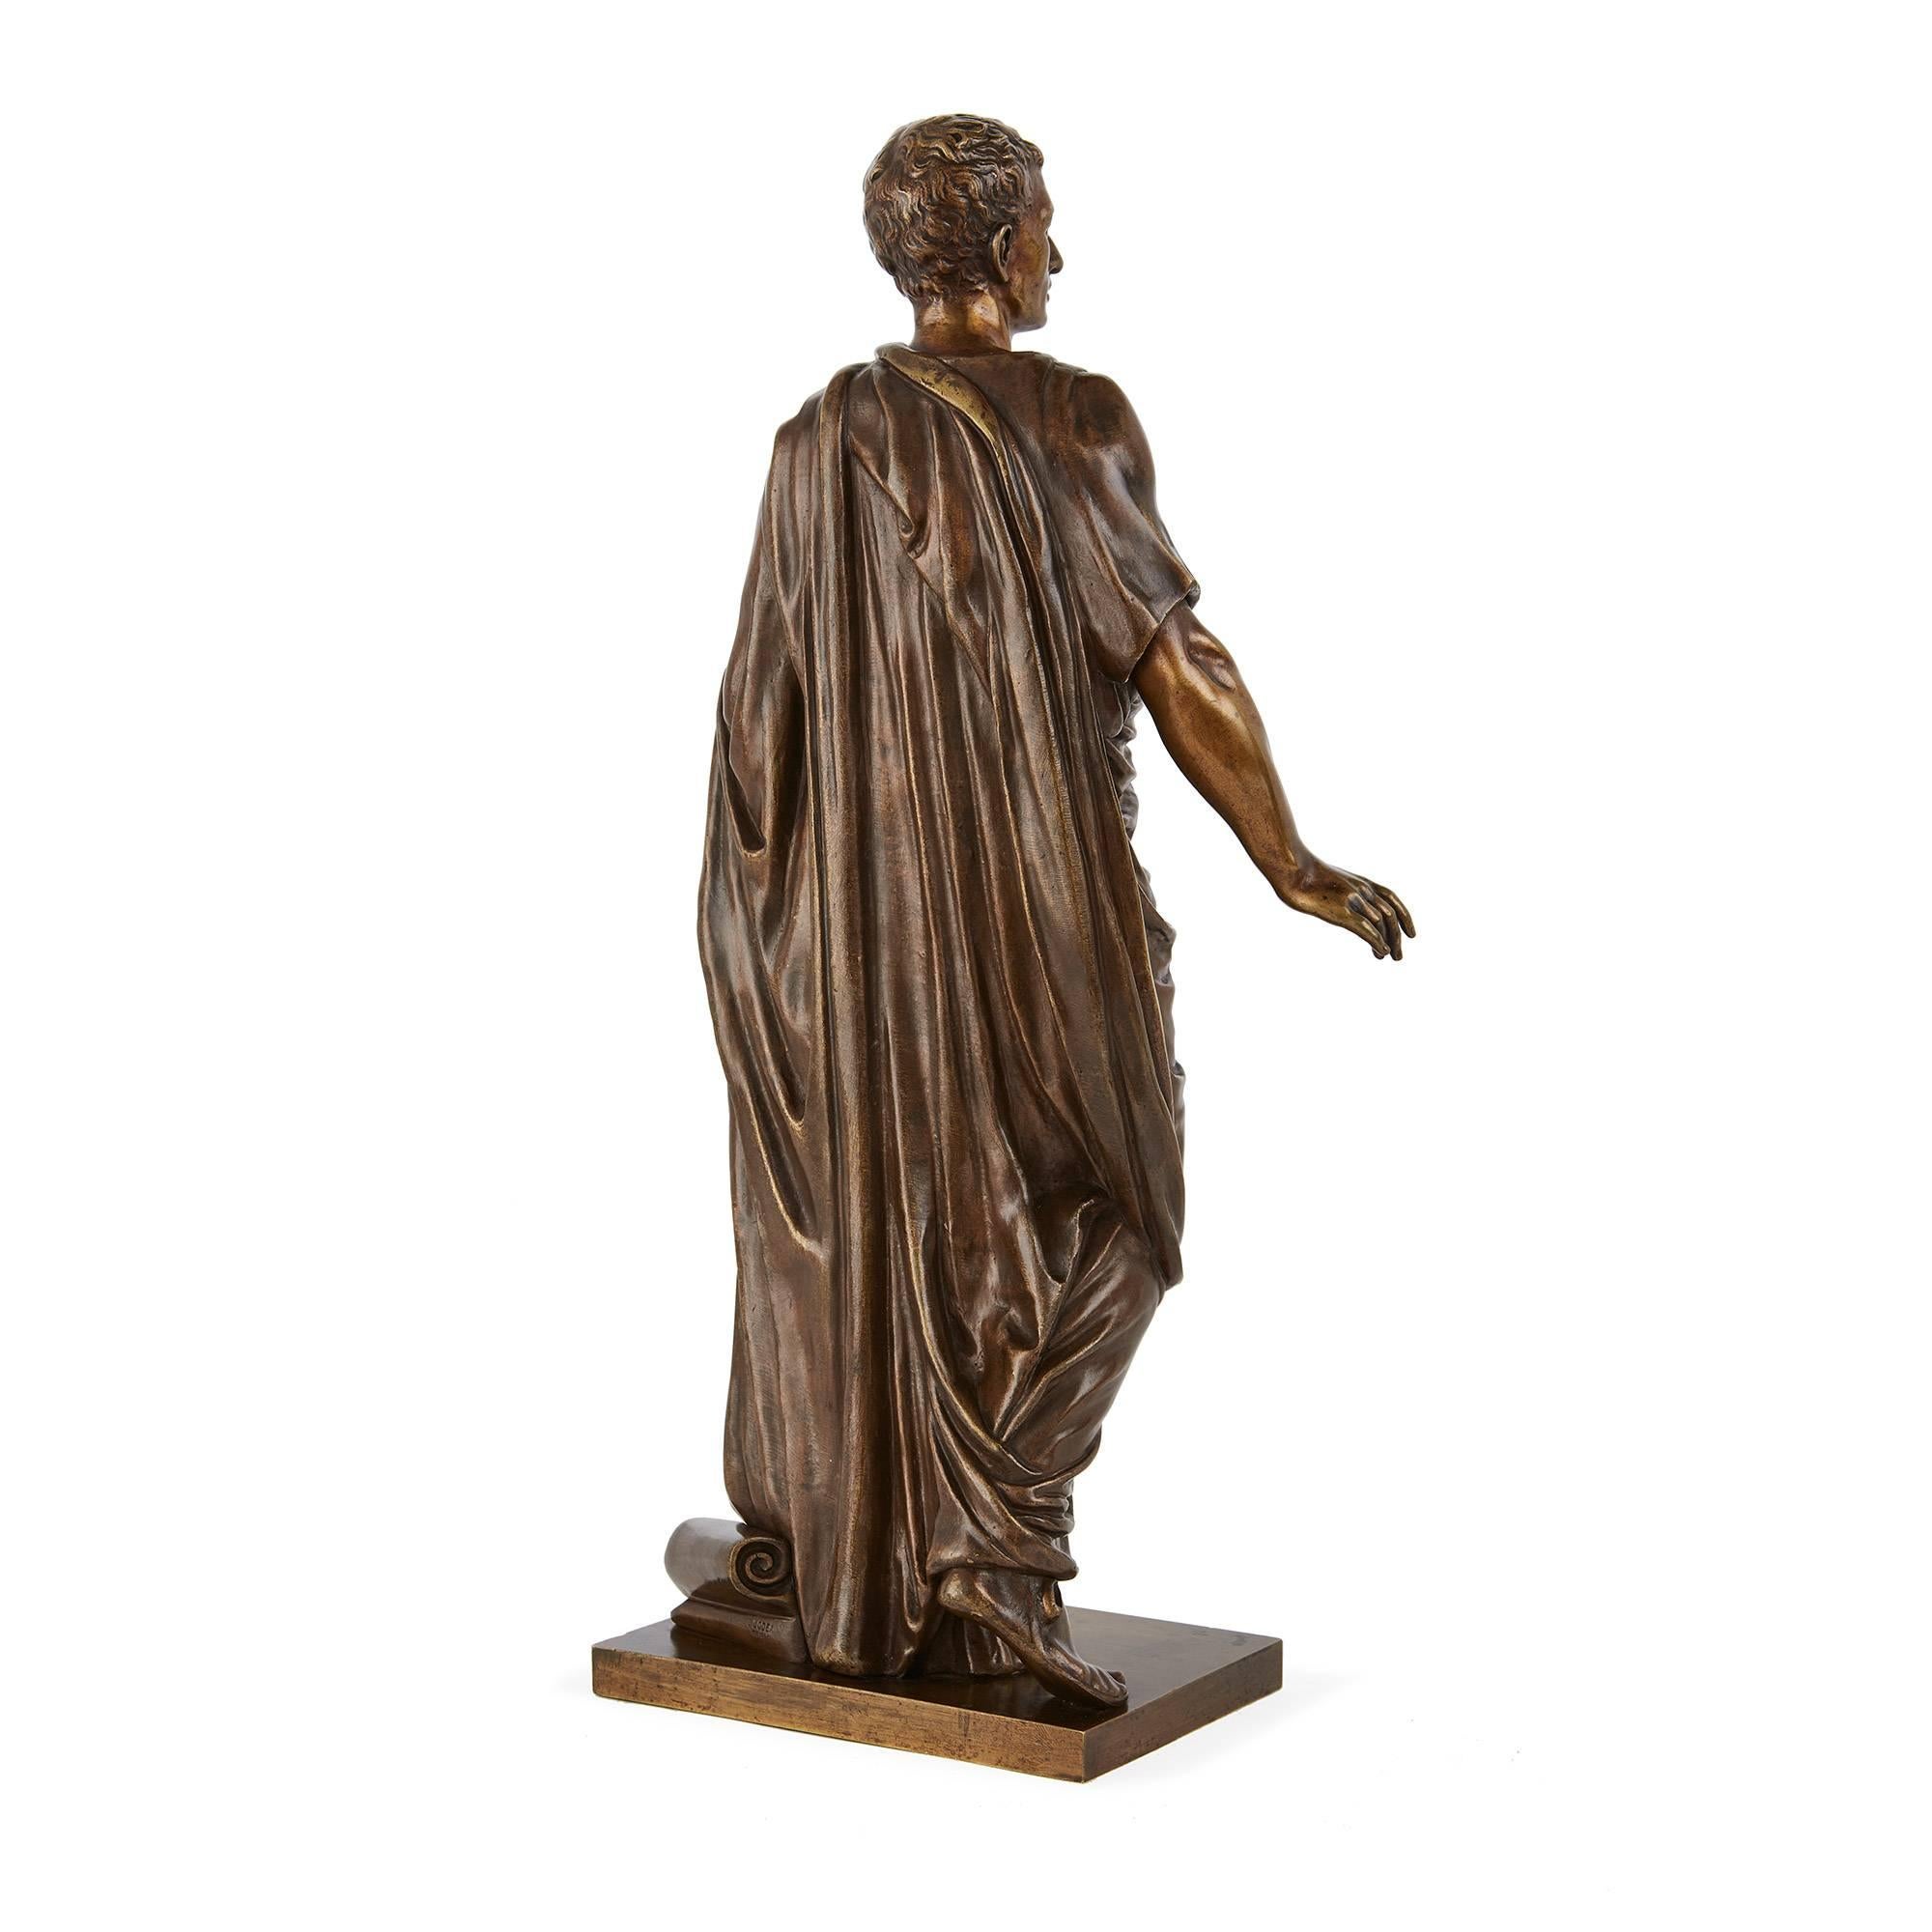 Diese schöne, ganzfigurige Figur ist in der Contrapposto-Position modelliert, einer Haltung, die aus der klassischen griechischen Bildhauerei stammt. In der bildenden Kunst wird der Begriff 